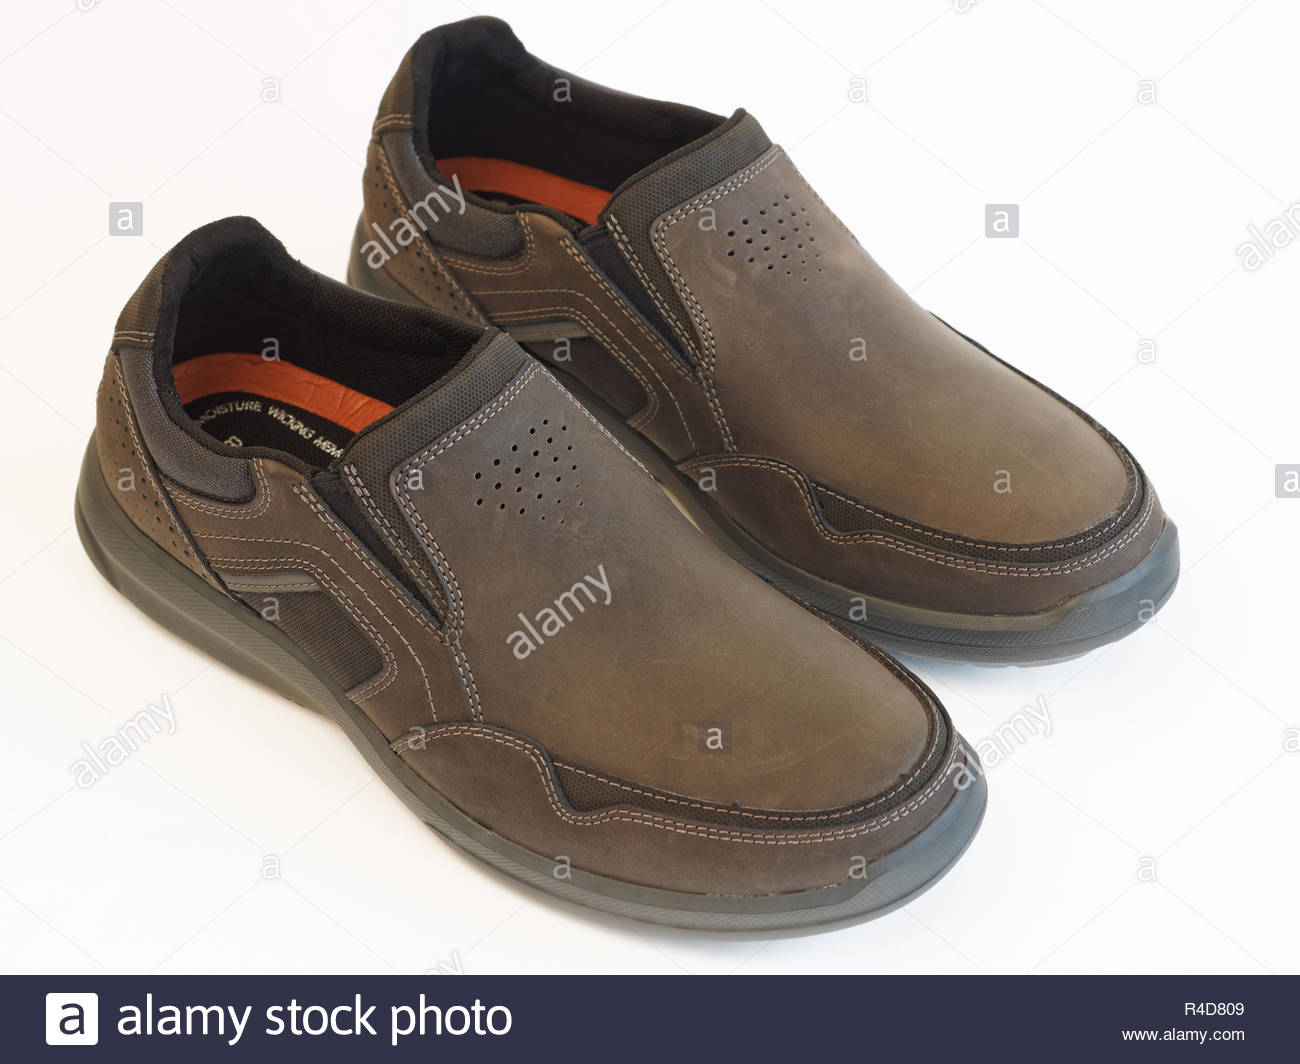 rockport lightweight men's shoes